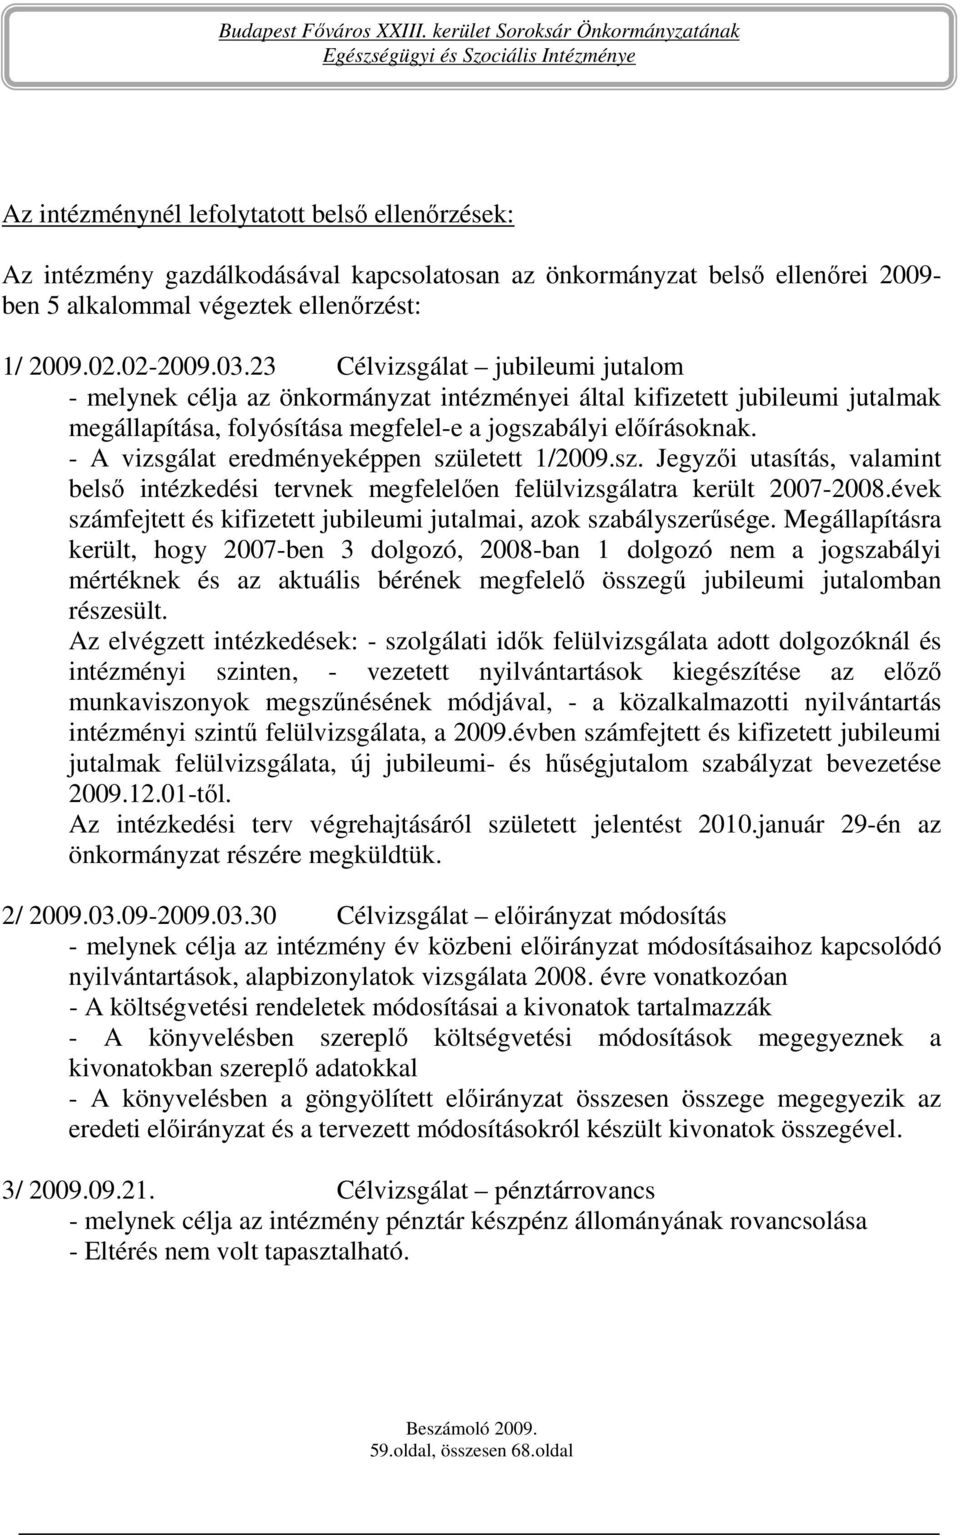 - A vizsgálat eredményeképpen született 1/2009.sz. Jegyzıi utasítás, valamint belsı intézkedési tervnek megfelelıen felülvizsgálatra került 2007-2008.